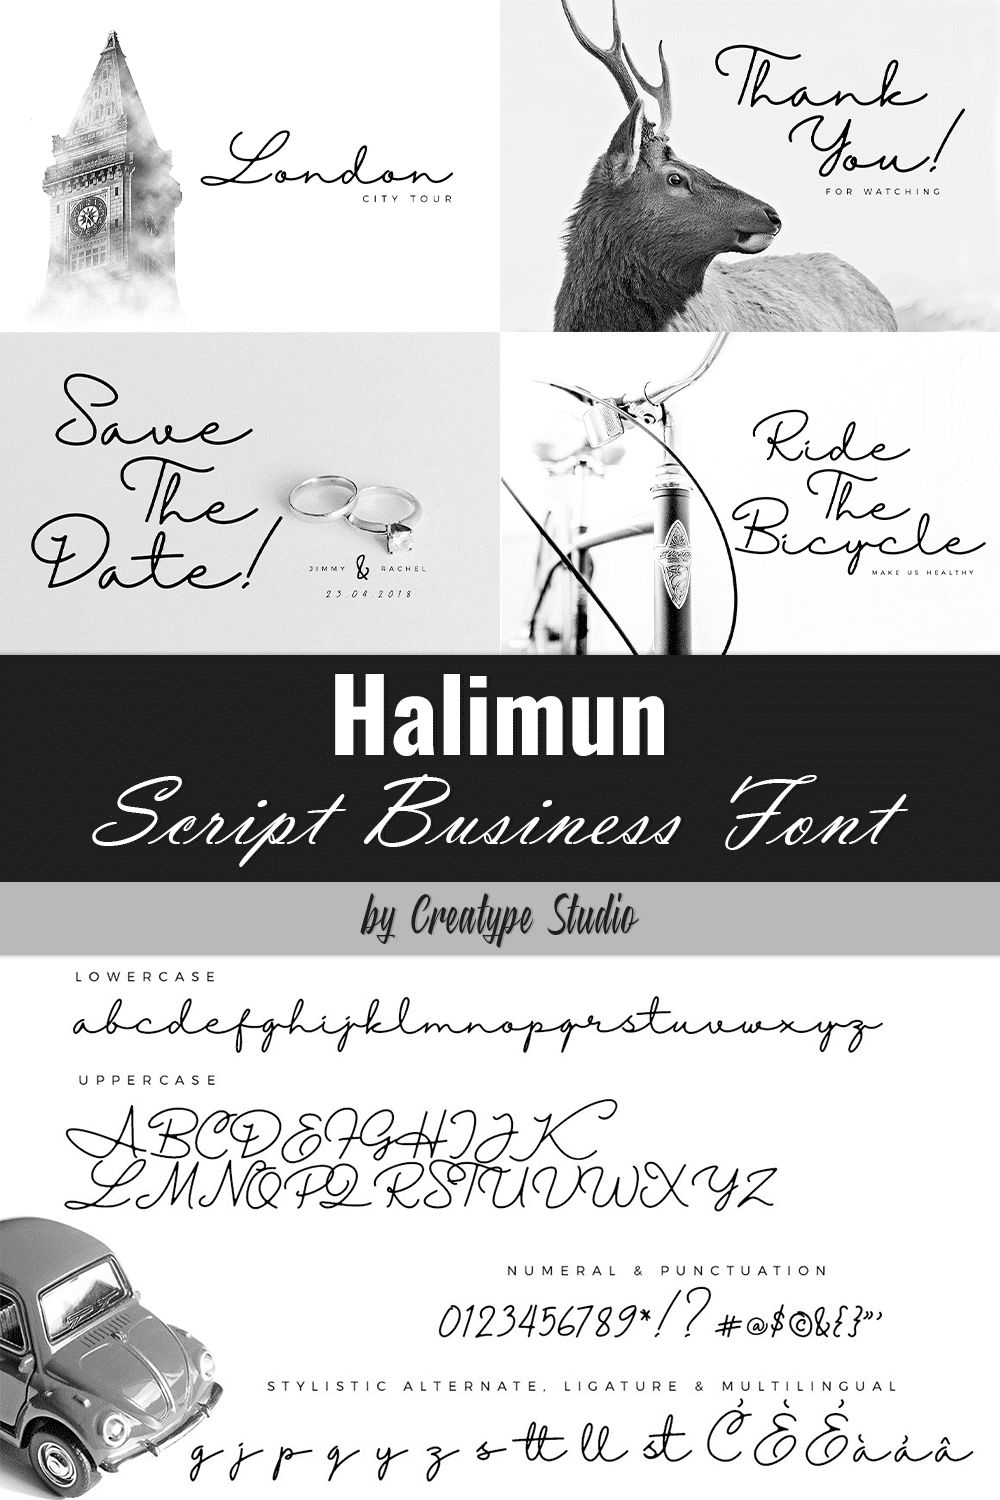 halimun script business font pinterest 507